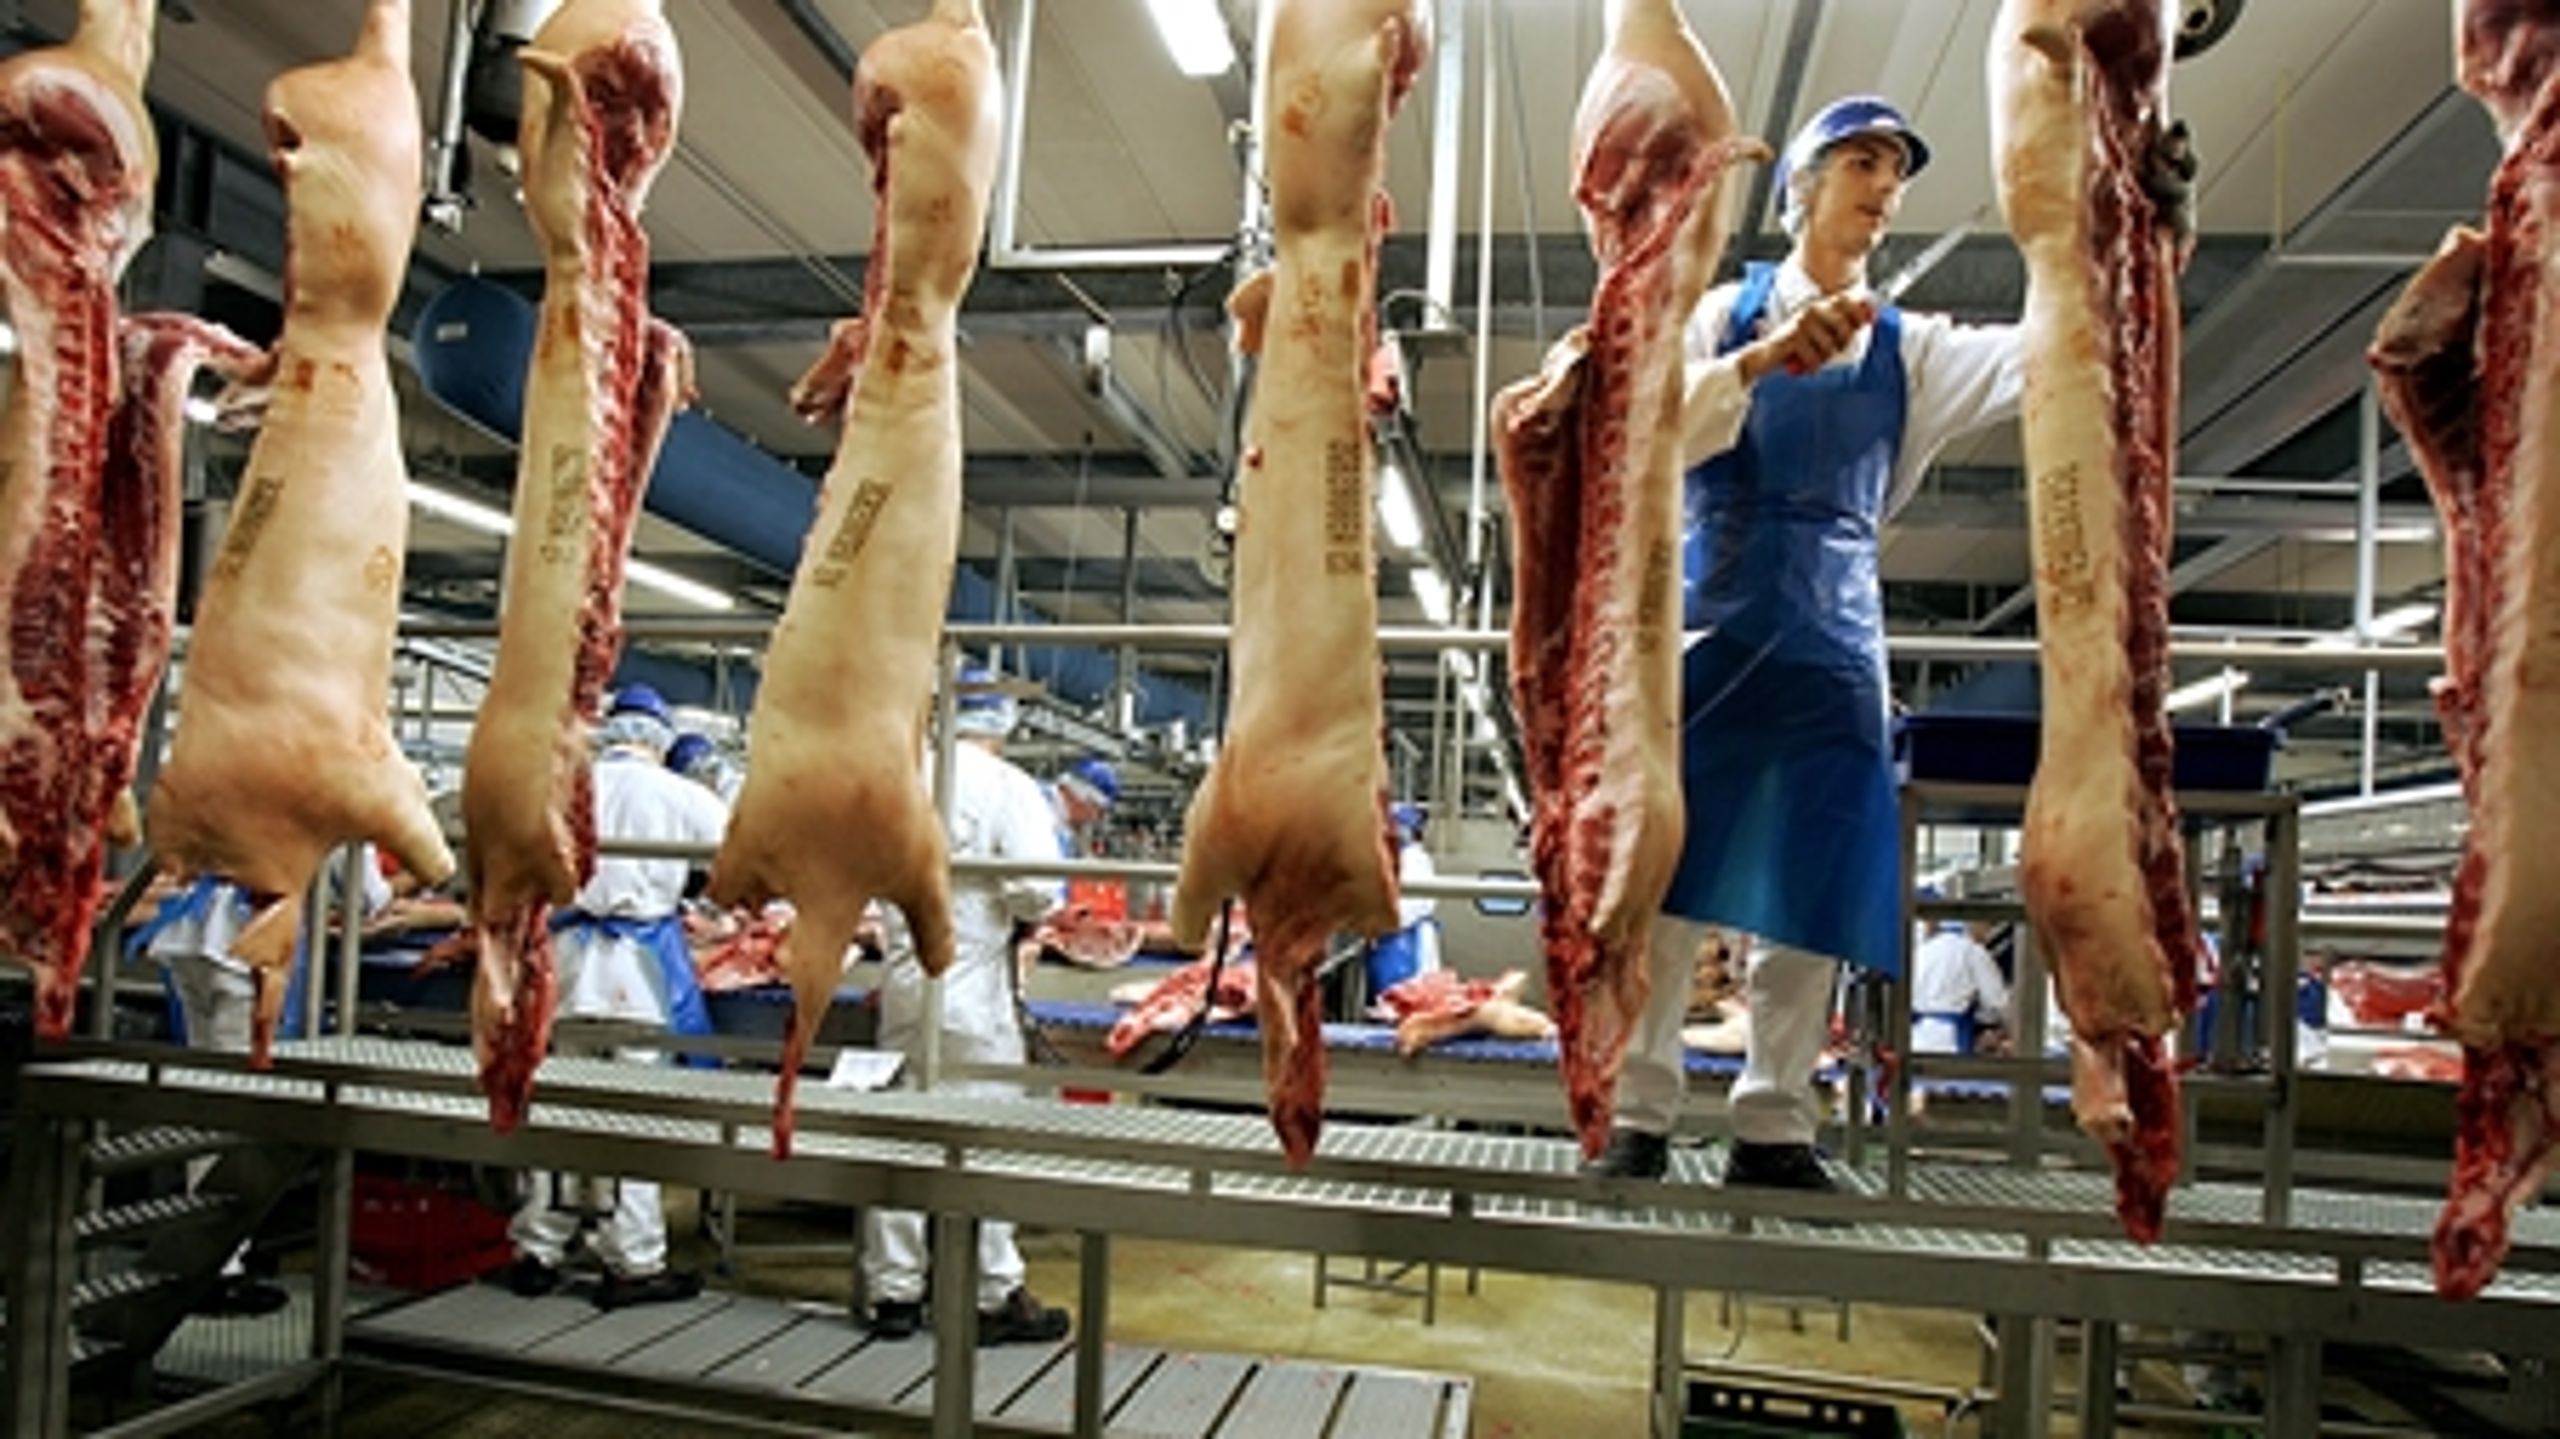 Danish Crowns slagteri bliver reddet af en nyt såkaldt medarbejderinvesteringsselskab. Lovgivingen skal dog først lige på plads.